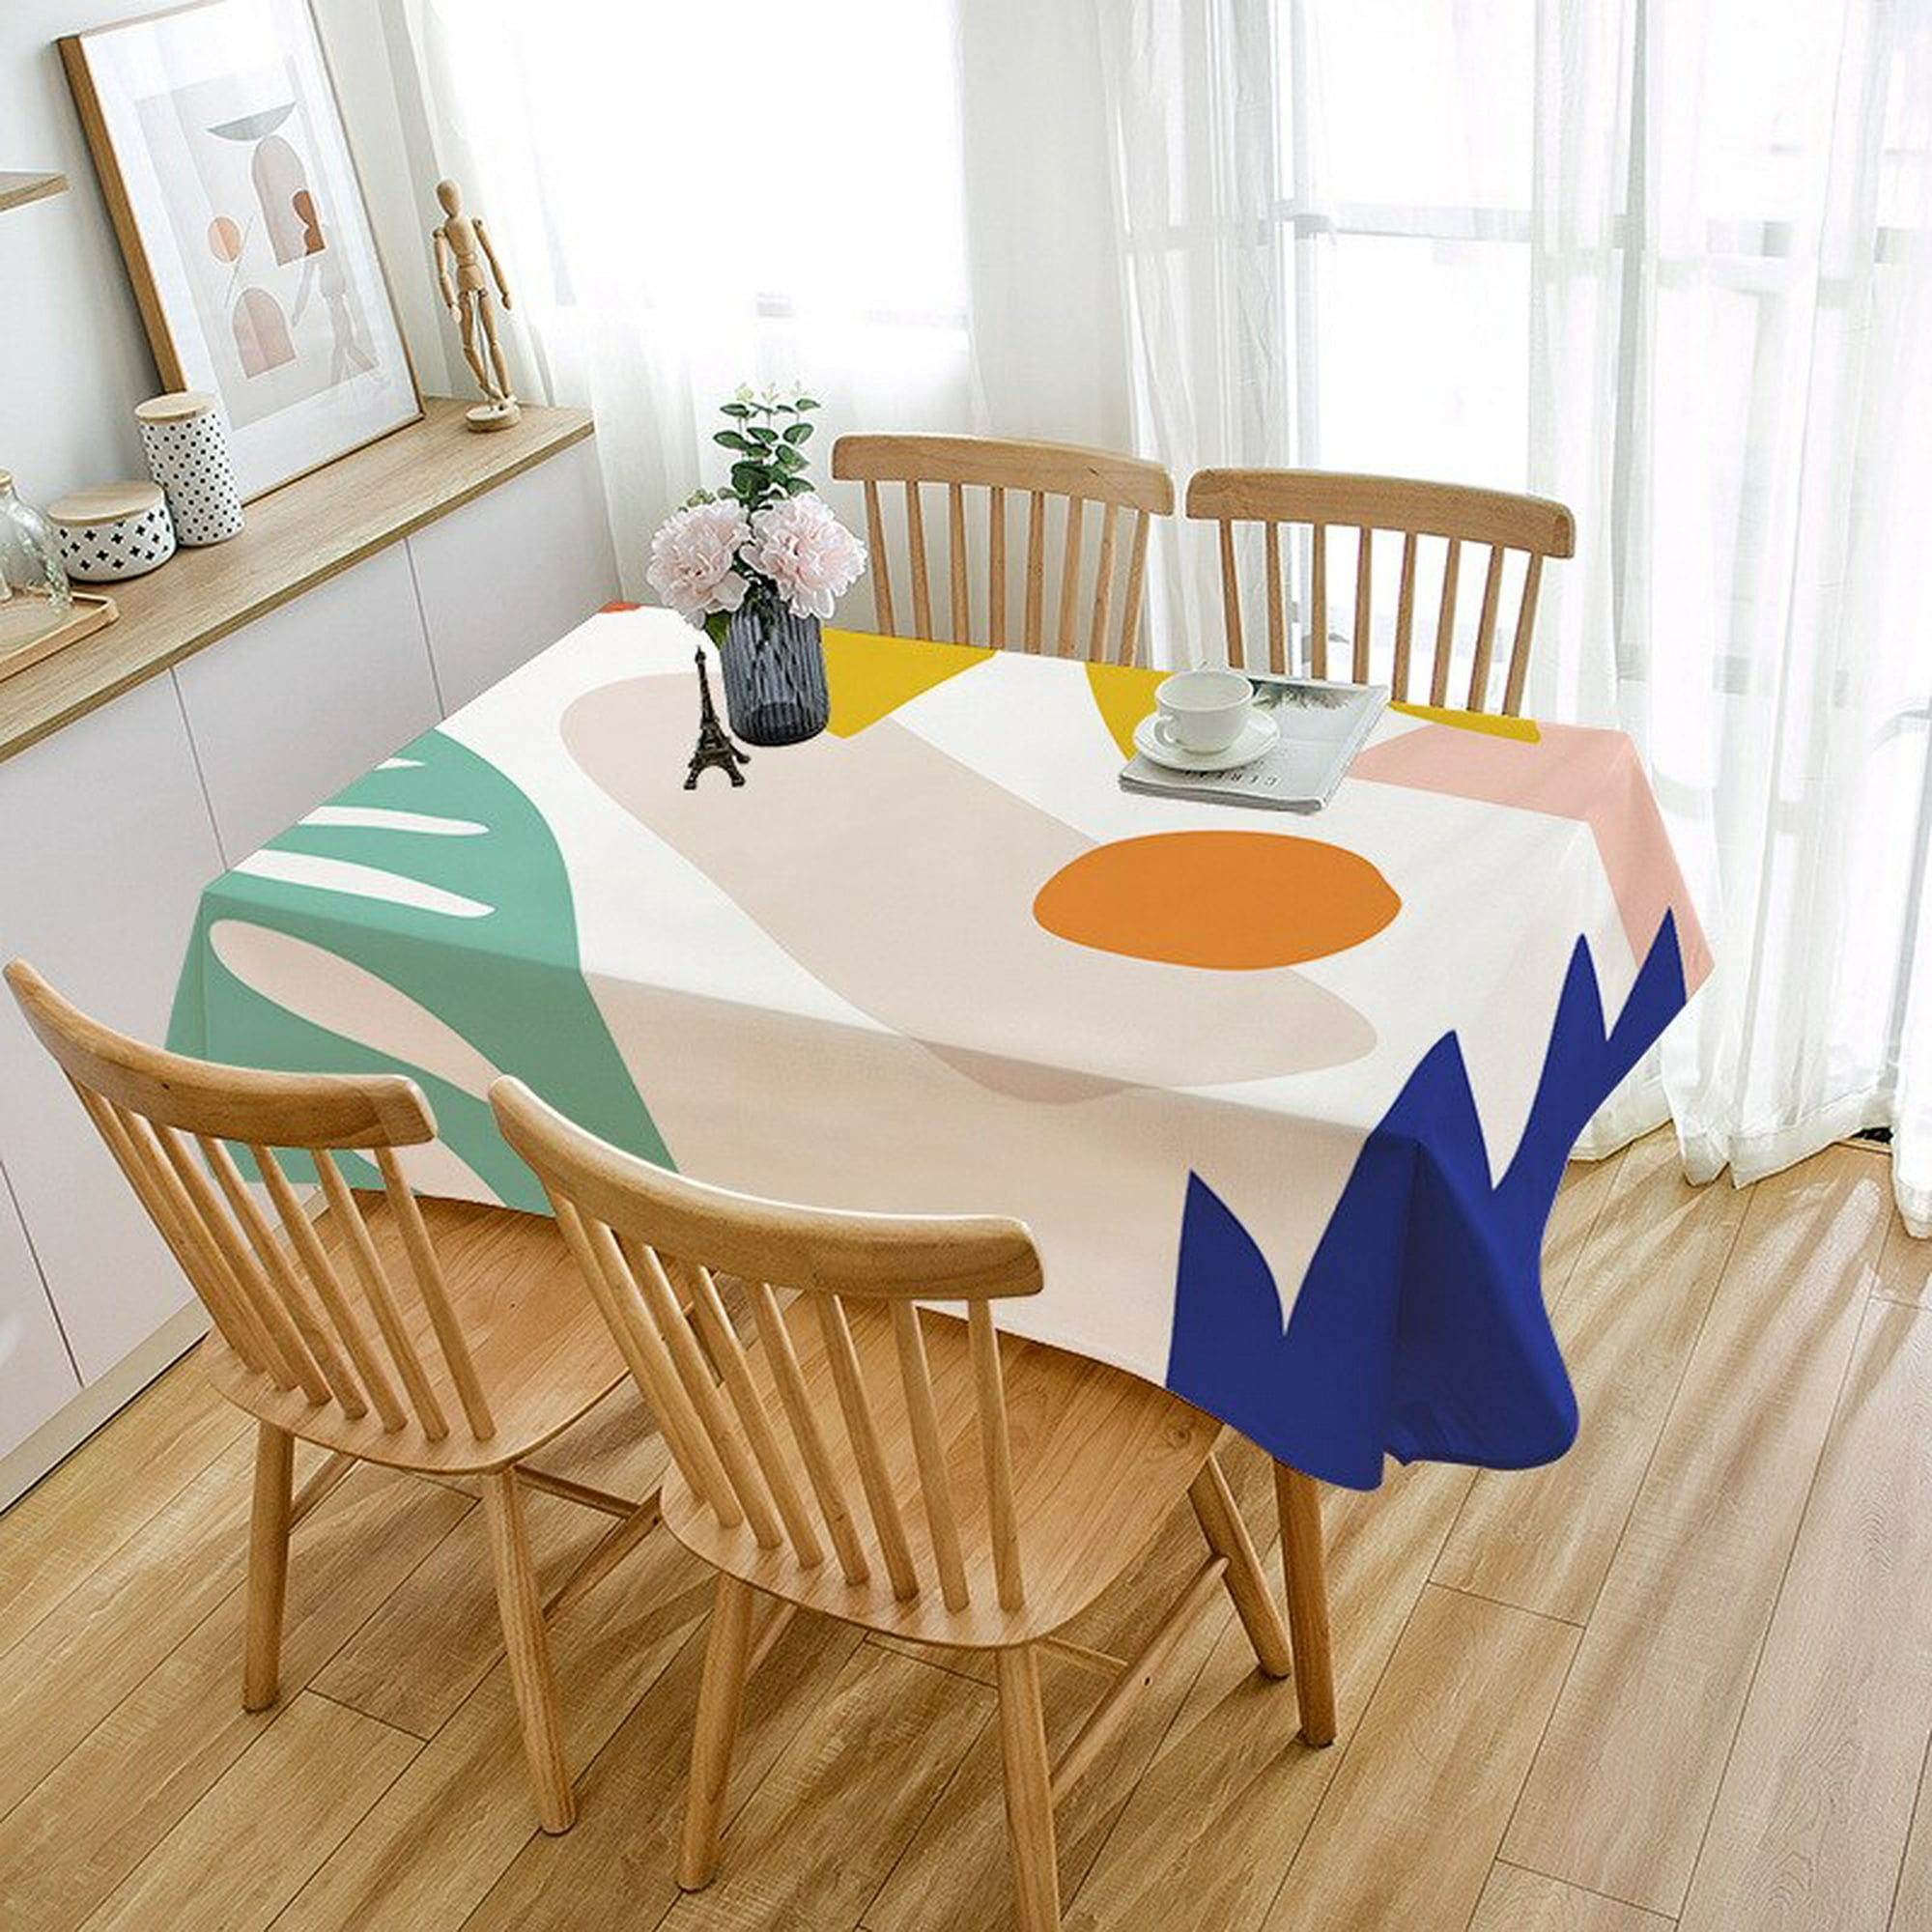 Mantel impermeable para mesa, manteles rectangulares nórdicos, mantel  redondo, cubierta de mesa antideslizante para decoración de boda, mesas de